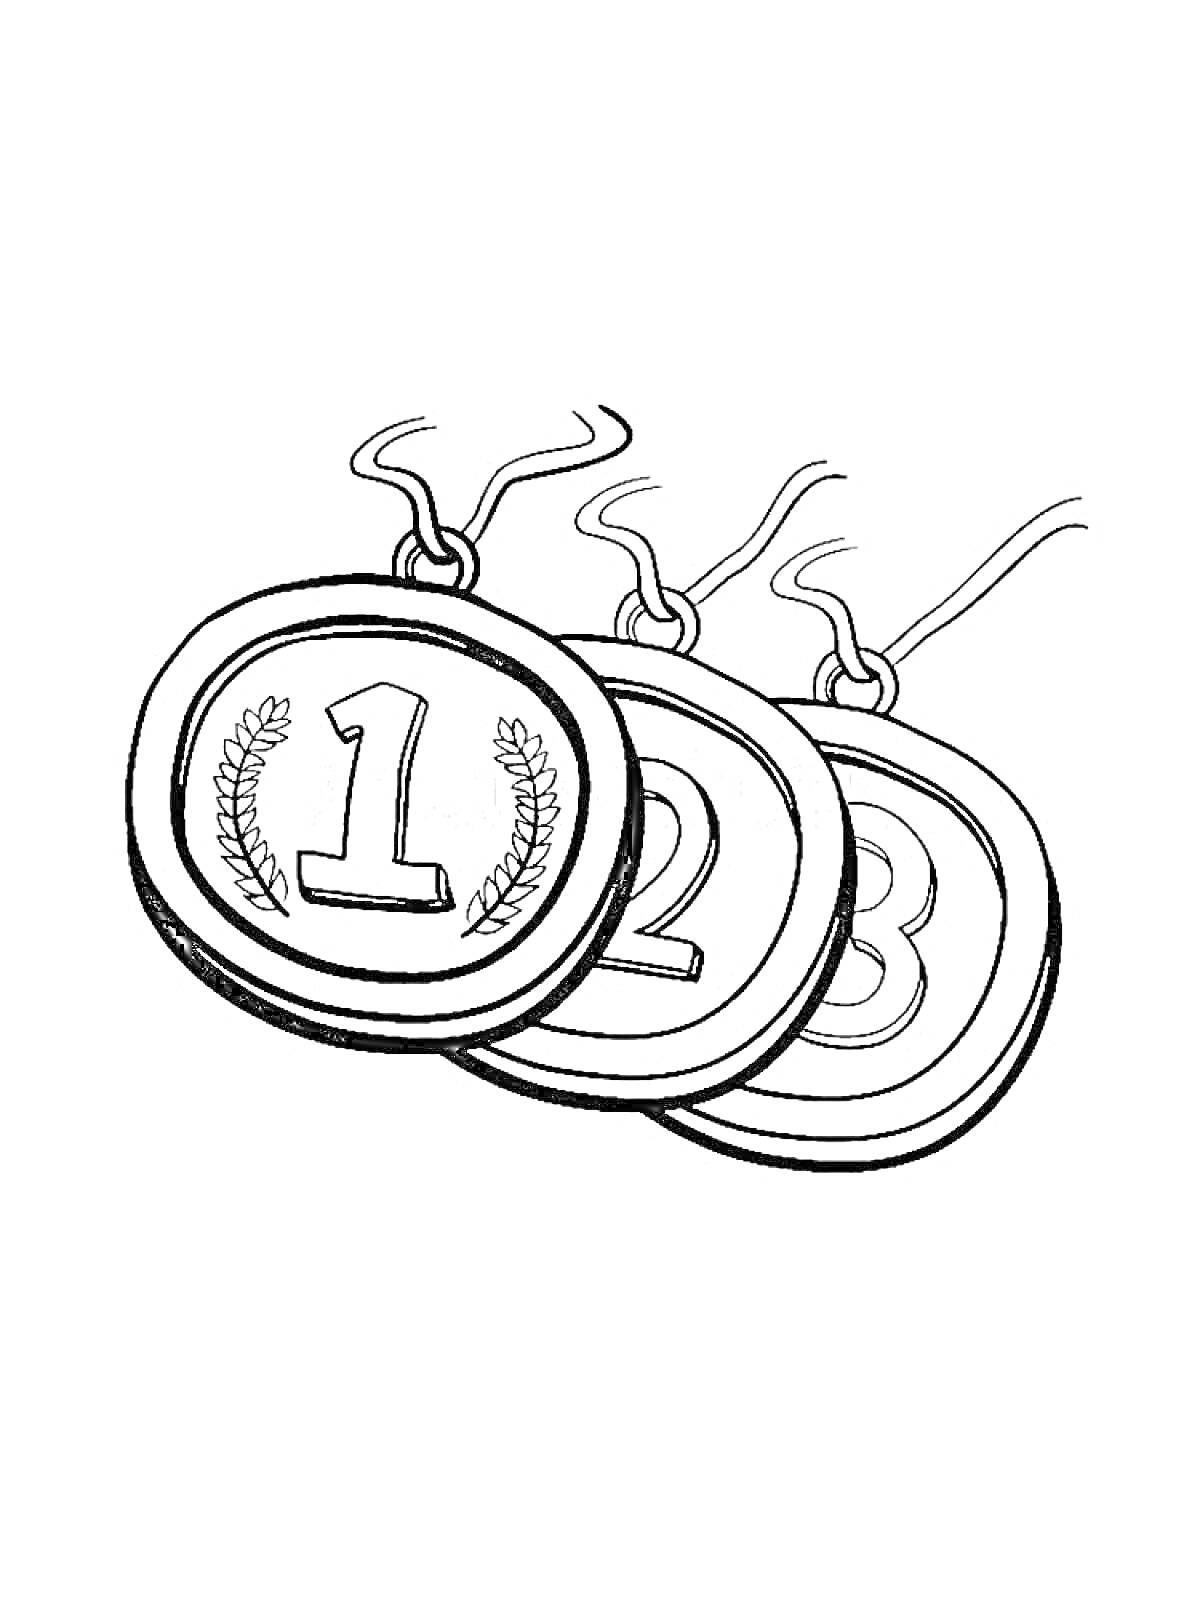 Медали с номерами 1, 2 и 3 и изображением лавровых ветвей